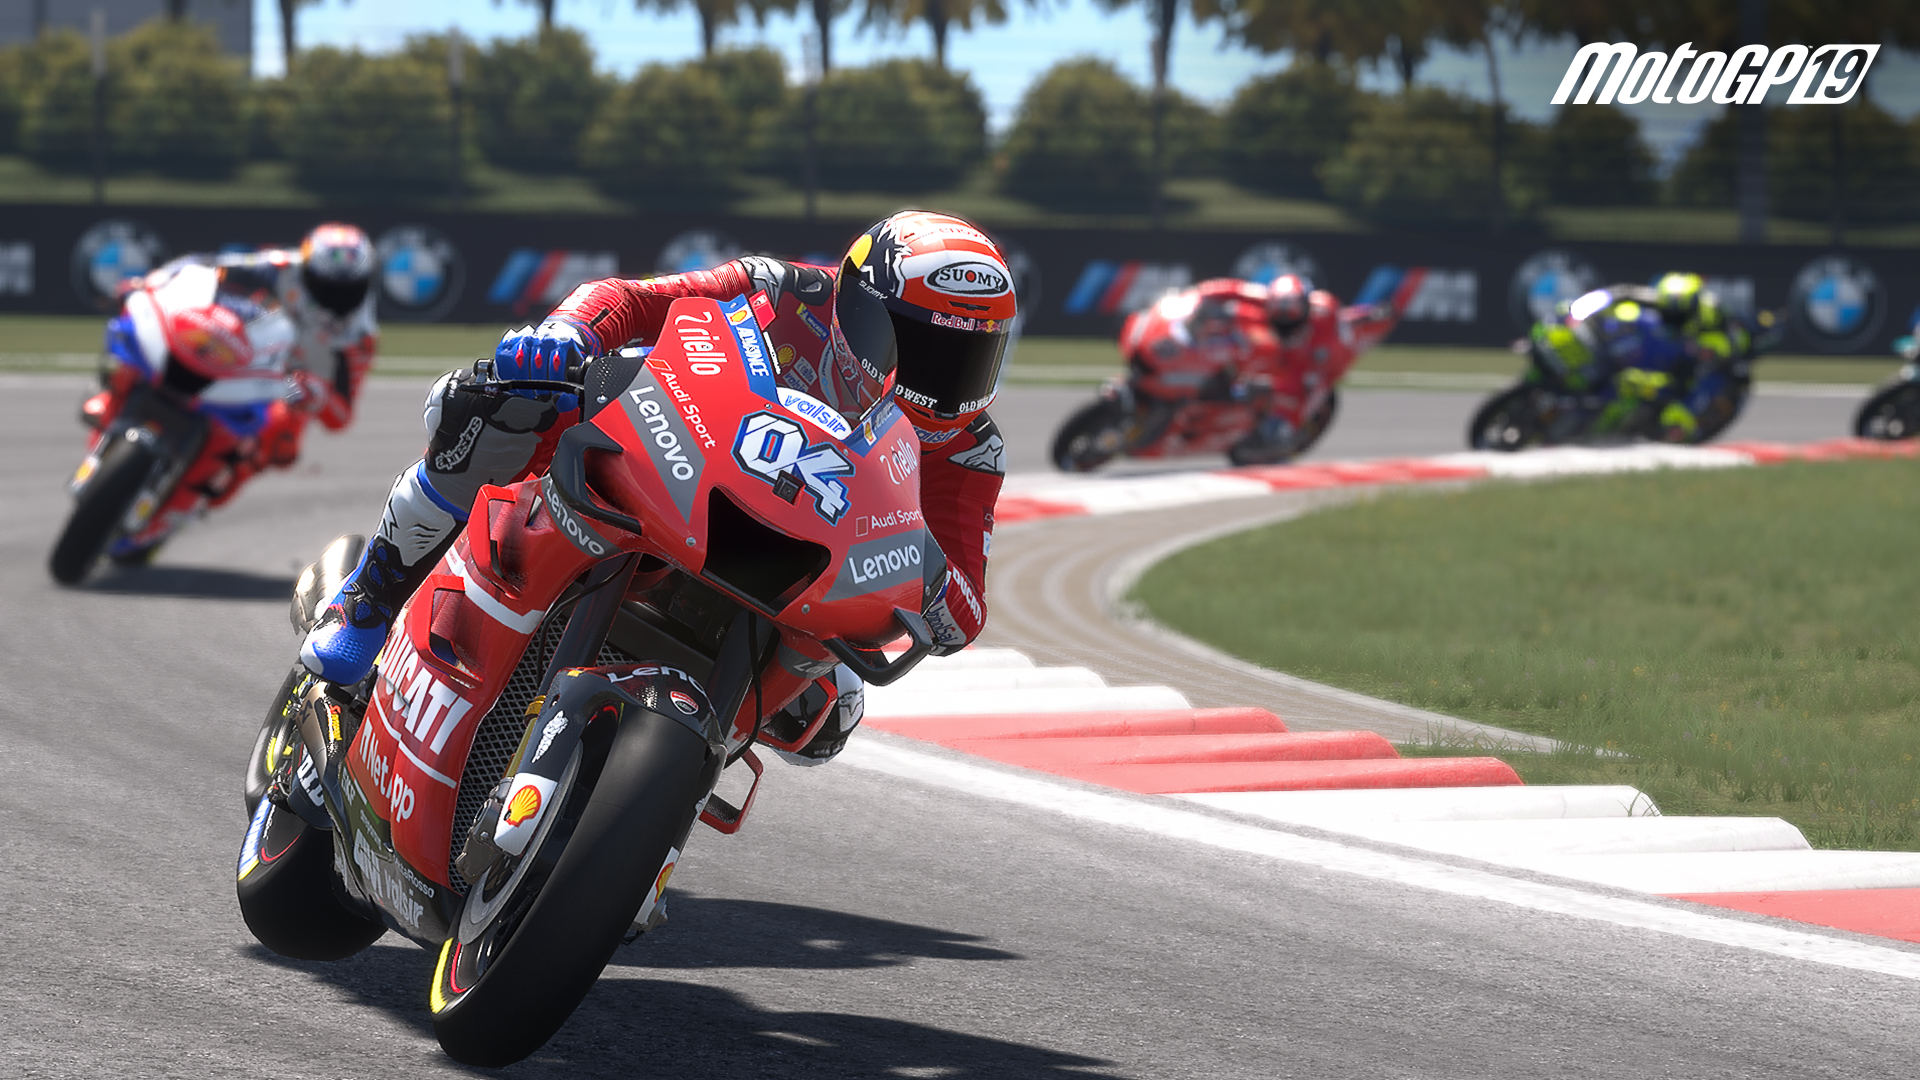 More information about "MotoGP 19 disponibile da oggi, trailer di lancio"